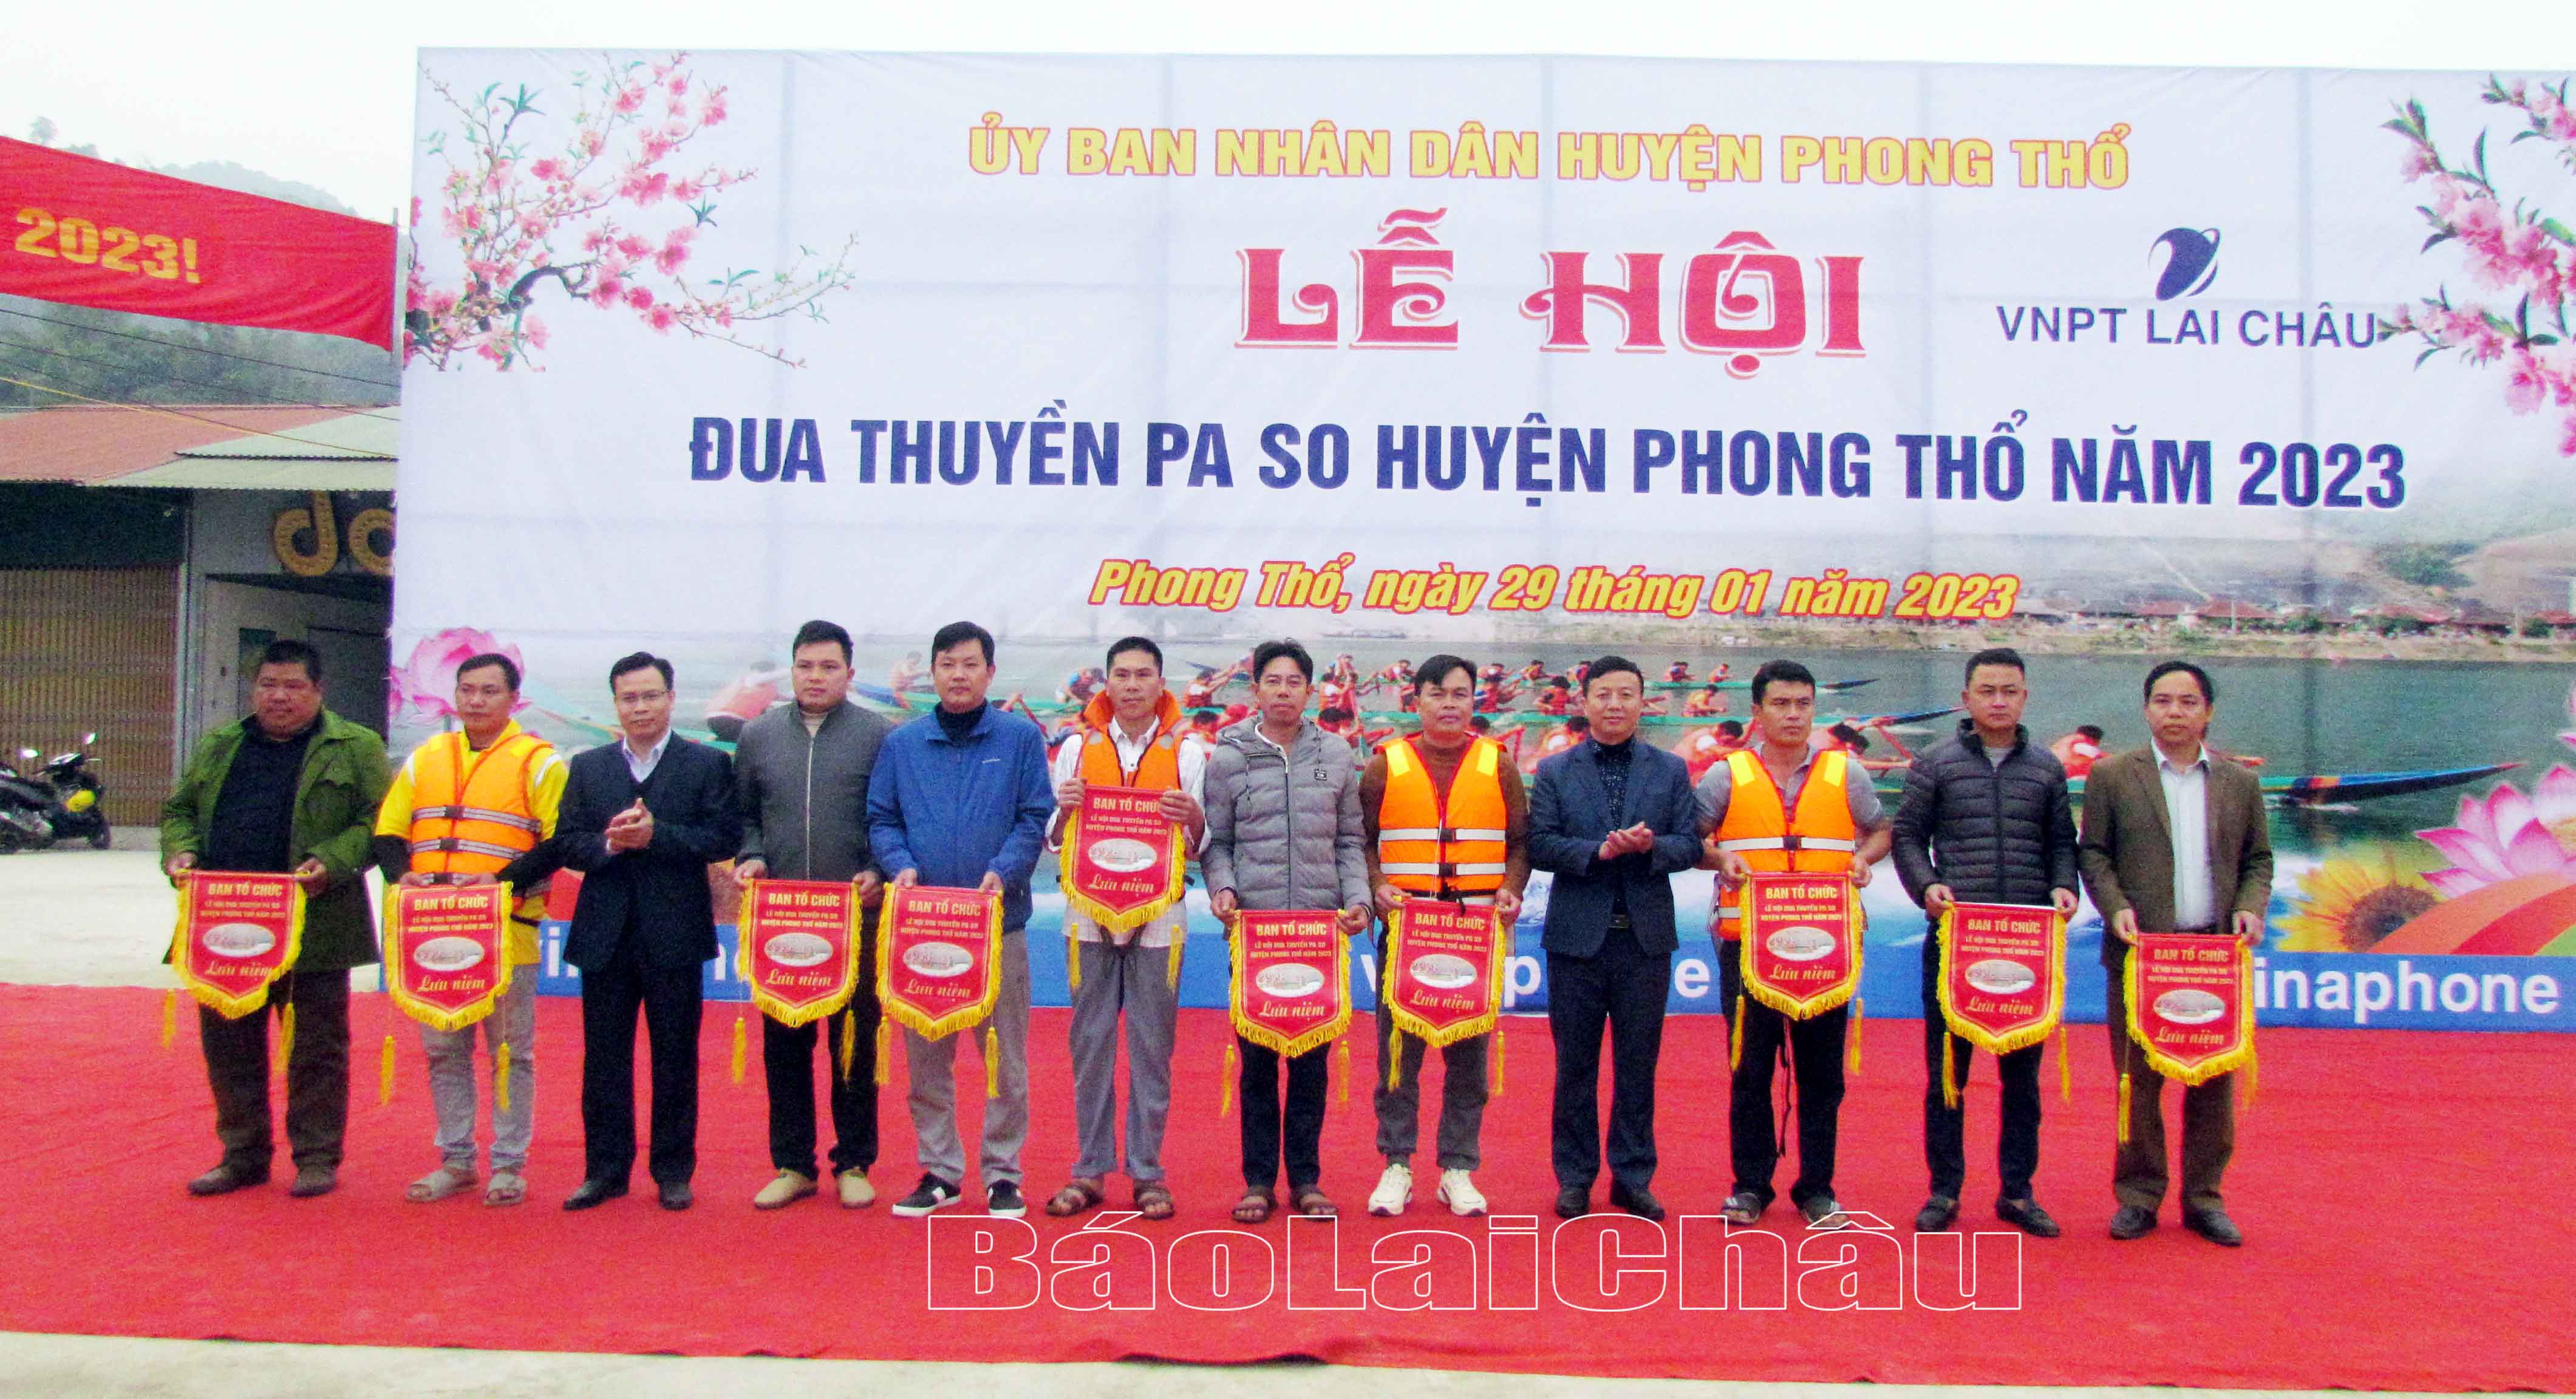 Lãnh đạo huyện Phong Thổ trao cờ lưu niệm cho các đội tham gia thi đua thuyền. 